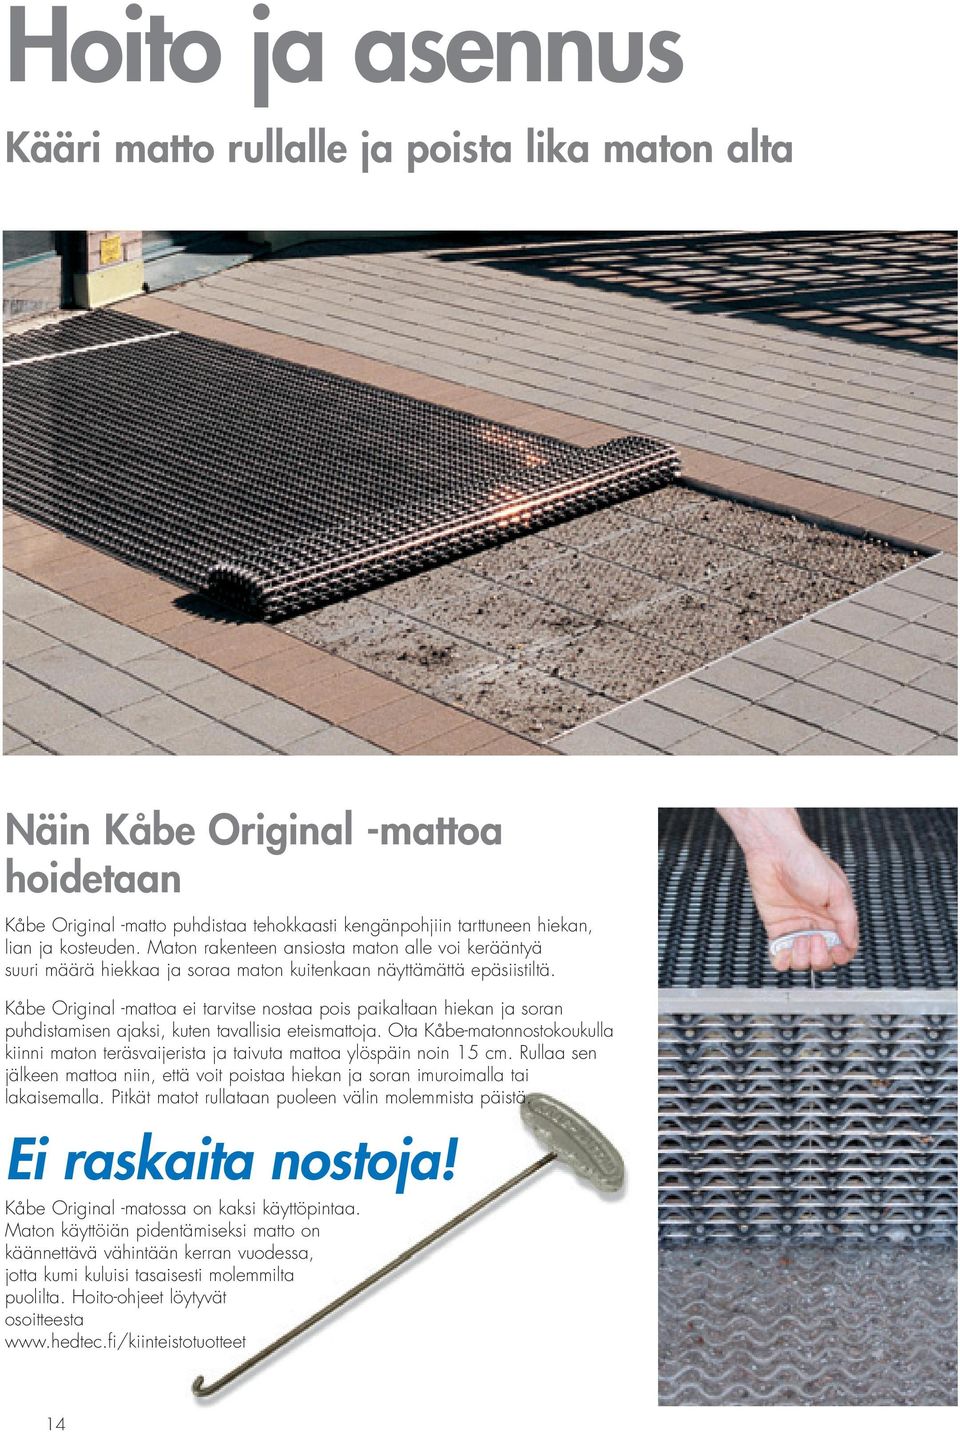 Kåbe Original -mattoa ei tarvitse nostaa pois paikaltaan hiekan ja soran puhdistamisen ajaksi, kuten tavallisia eteismattoja.